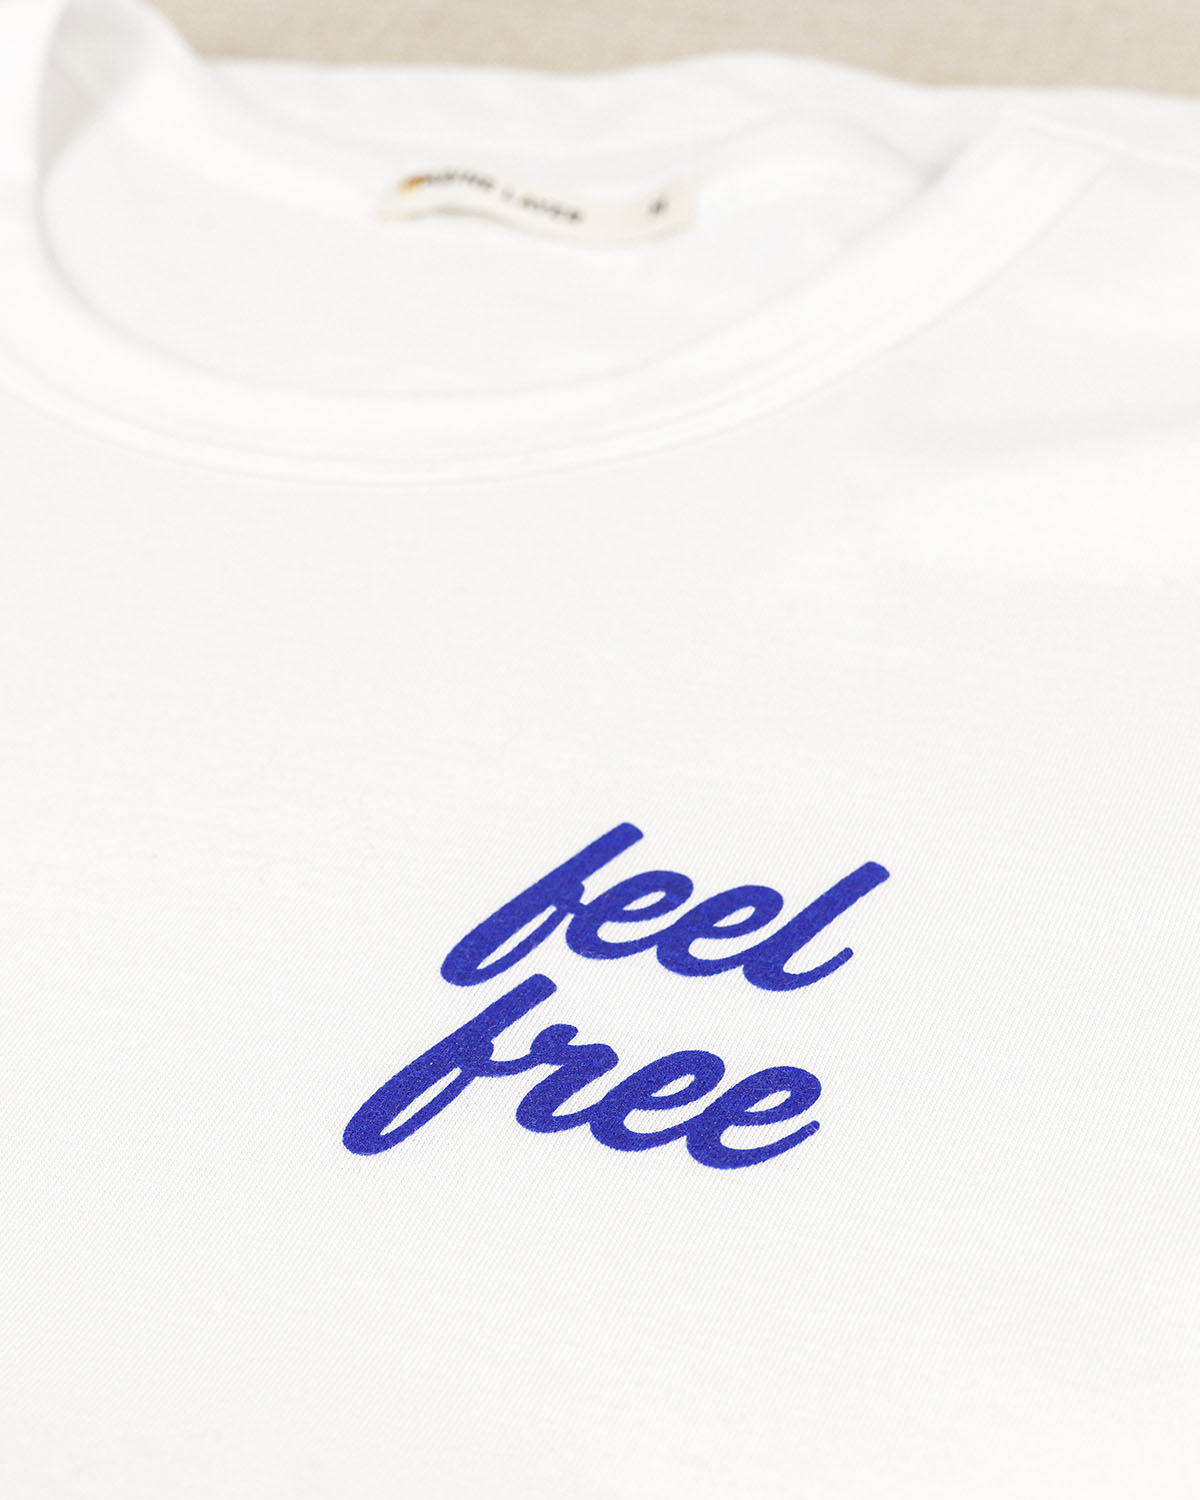 feel free x Marine Layer Women's Signature Crew Shirt